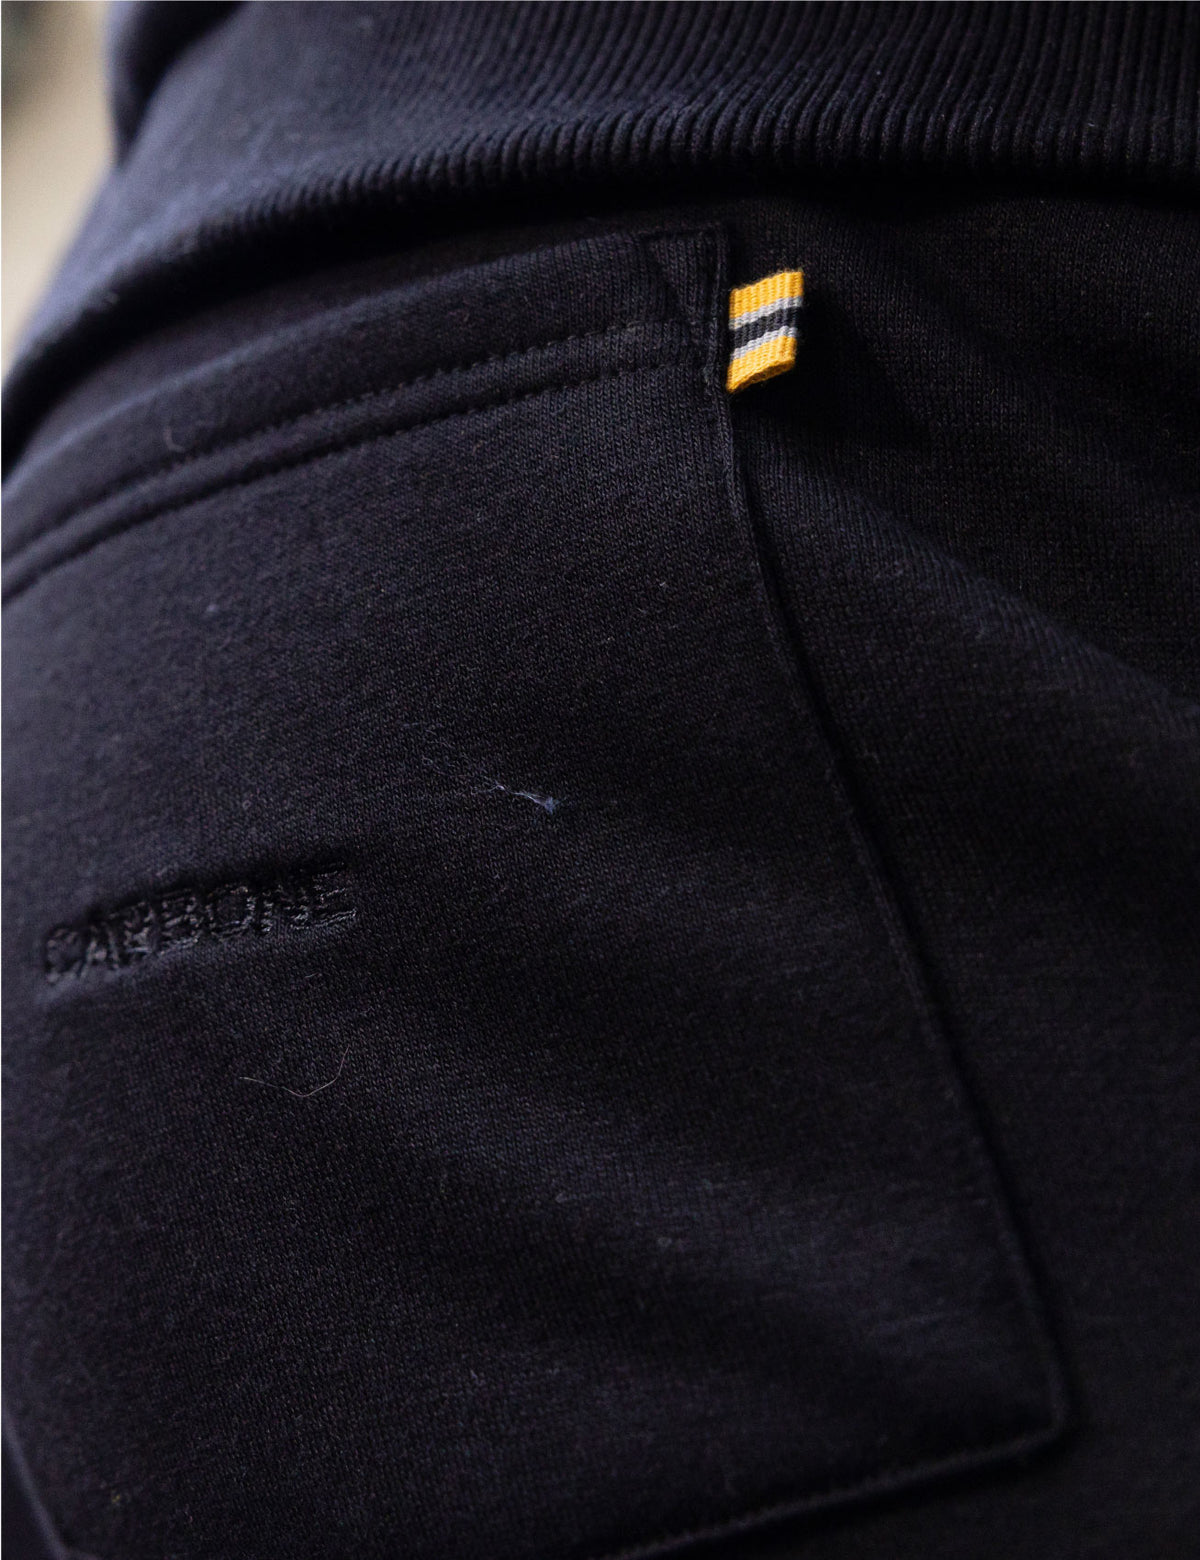 Pantalon rayé large GALA - Polyester & cupro noir - Mode éthique